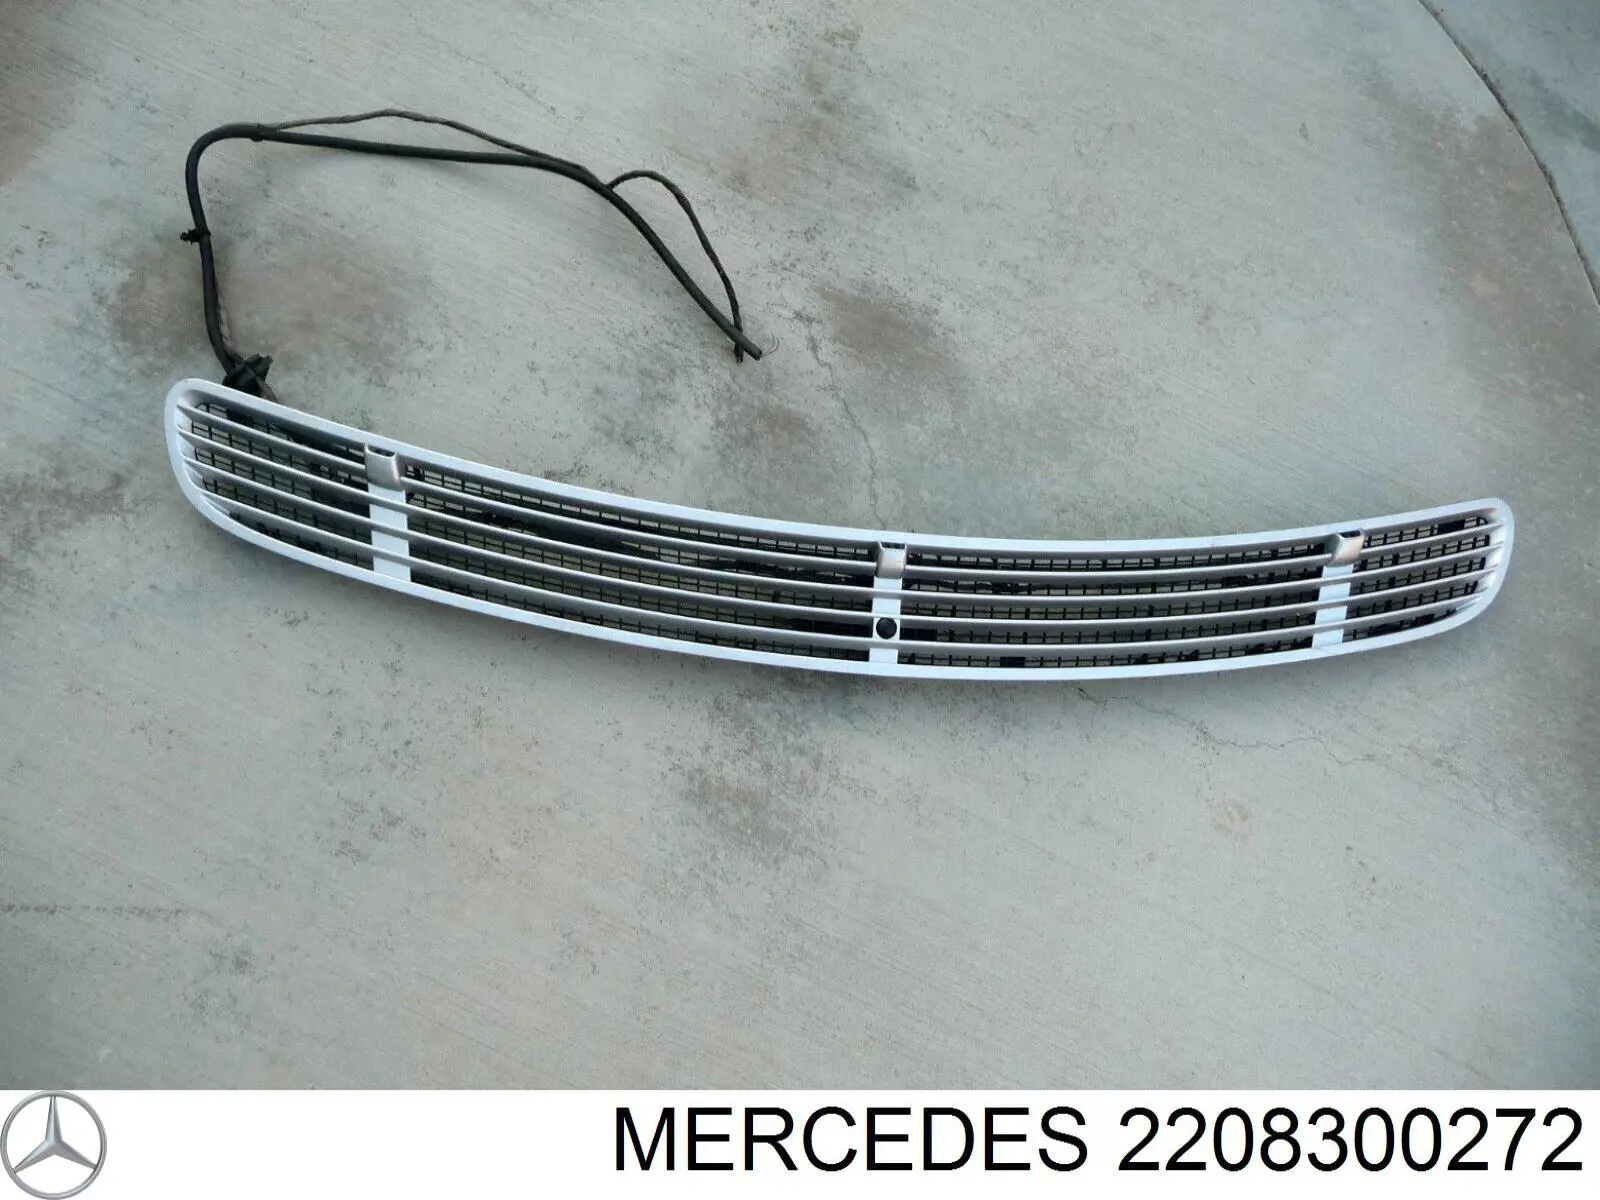 Sensor de luz para Mercedes CLS (C219)